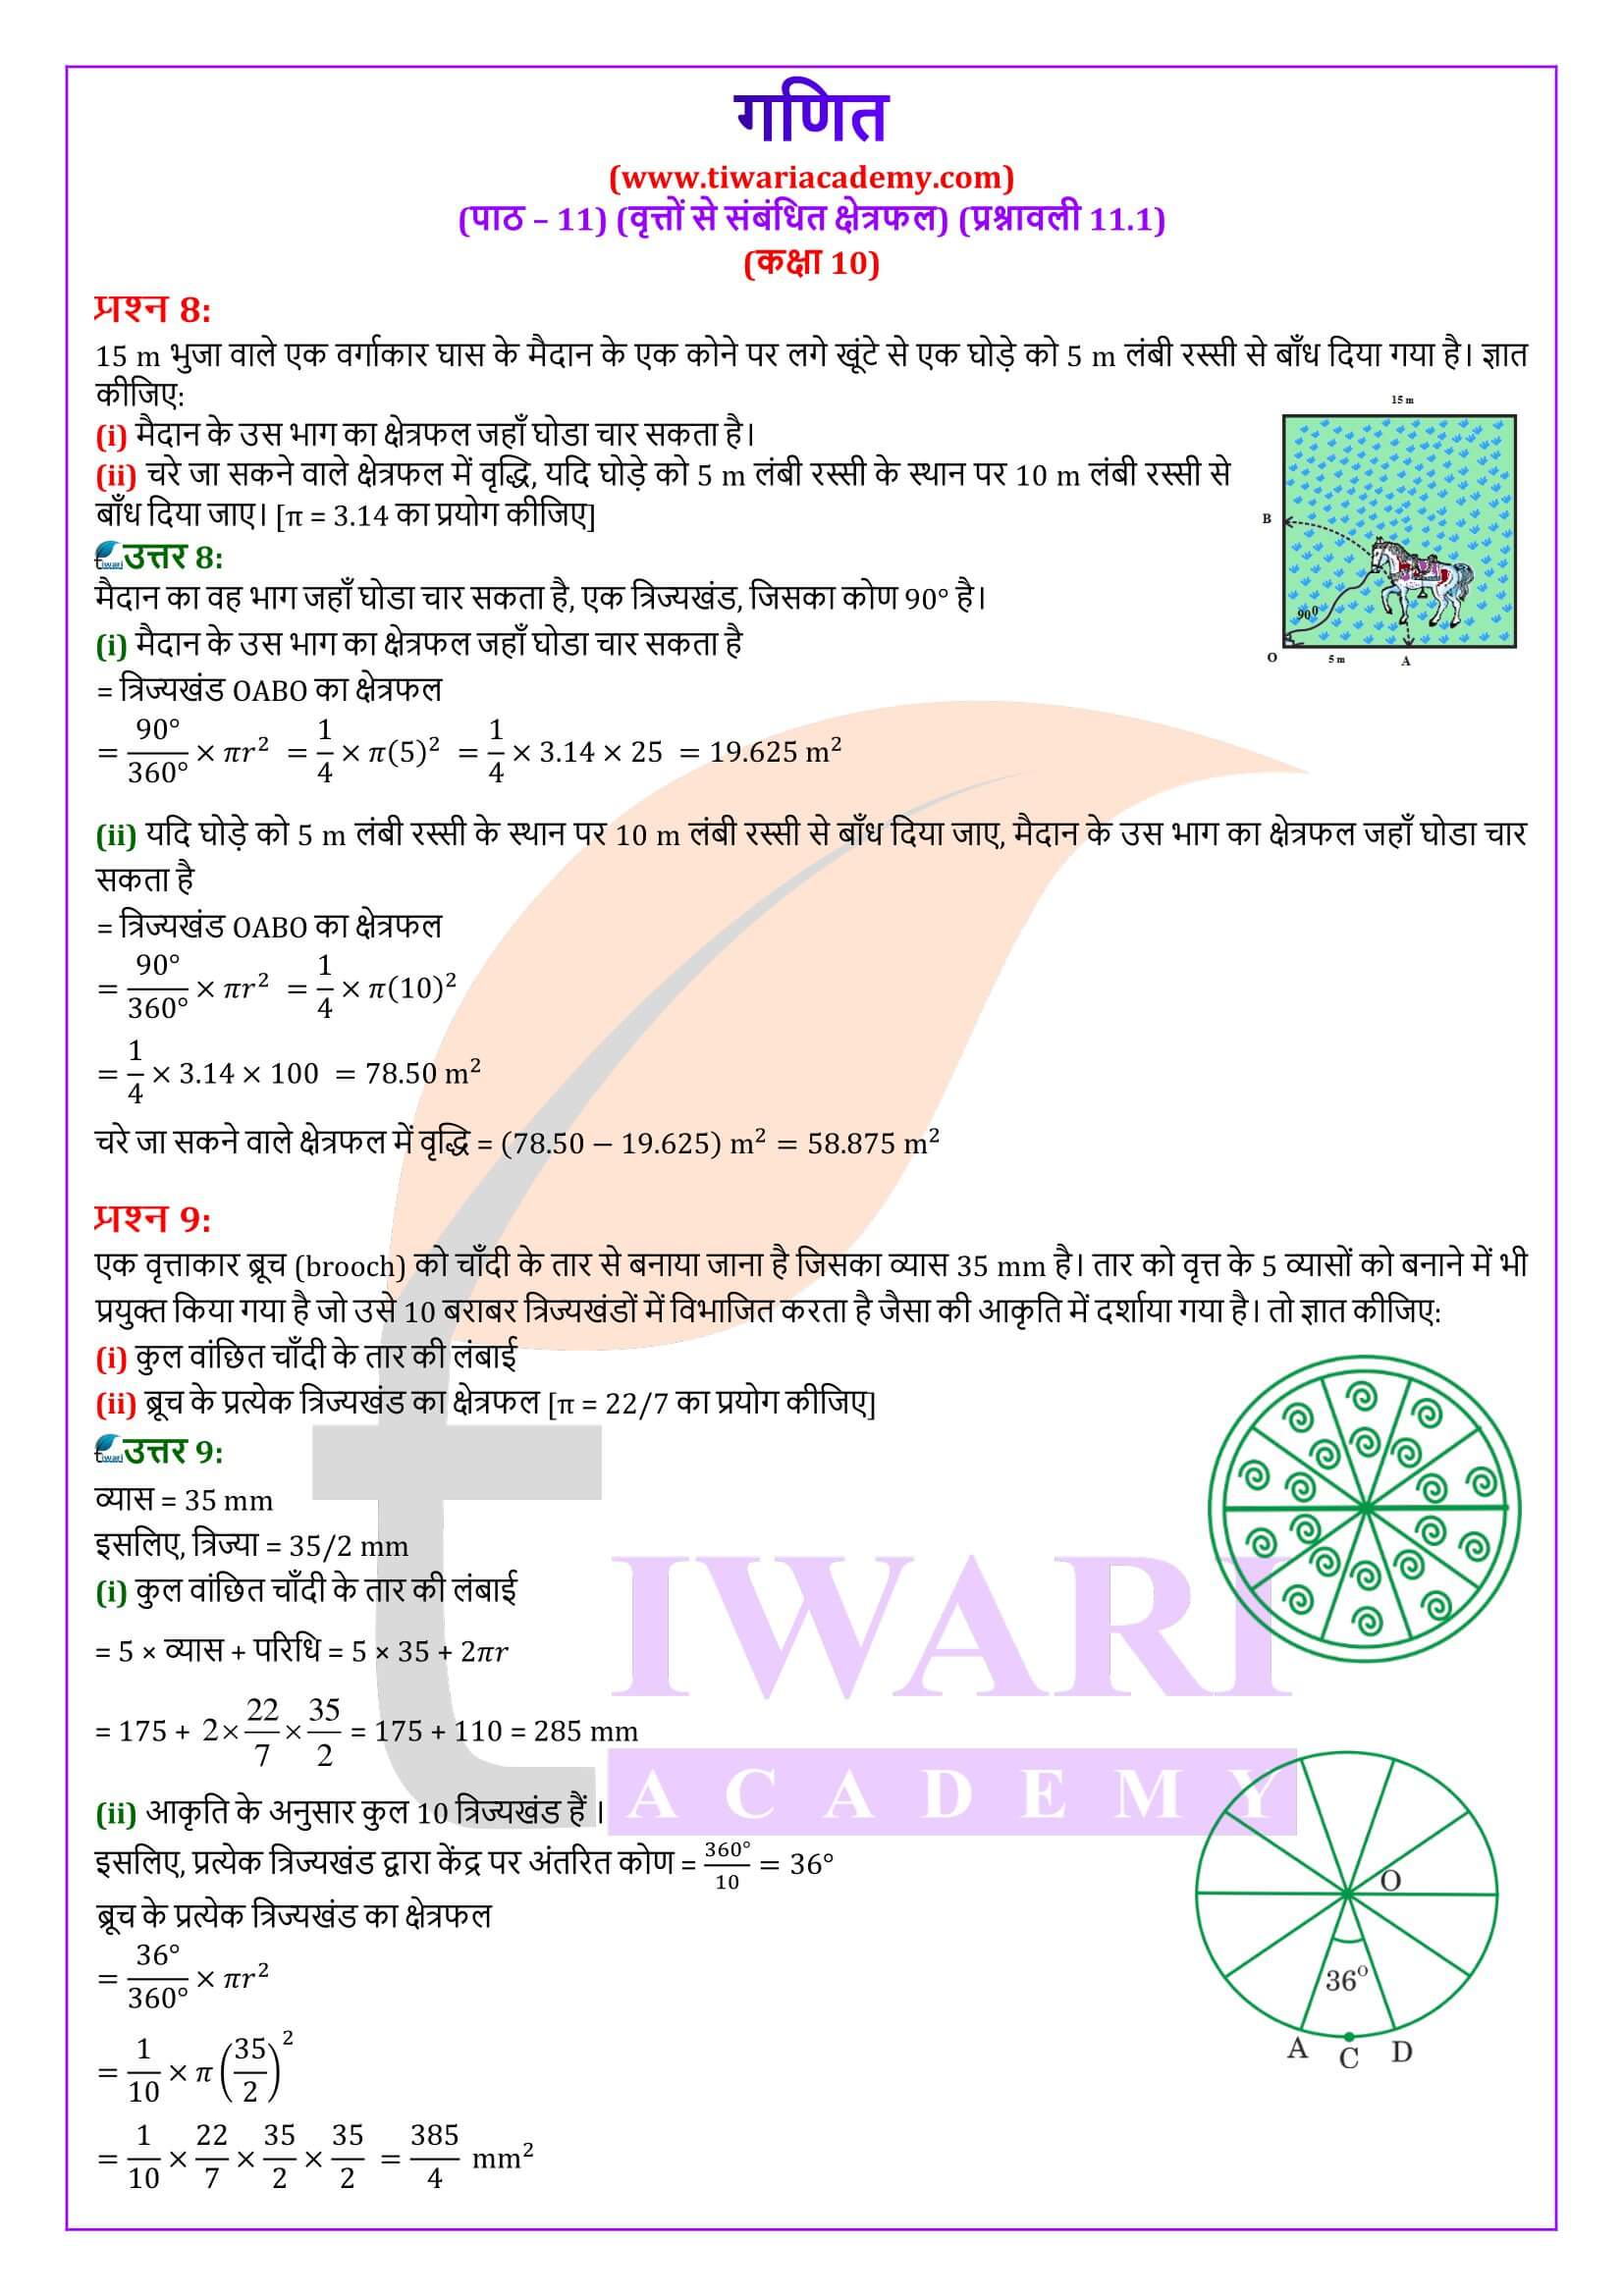 कक्षा 10 गणित प्रश्नावली 11.1 के हल हिंदी में